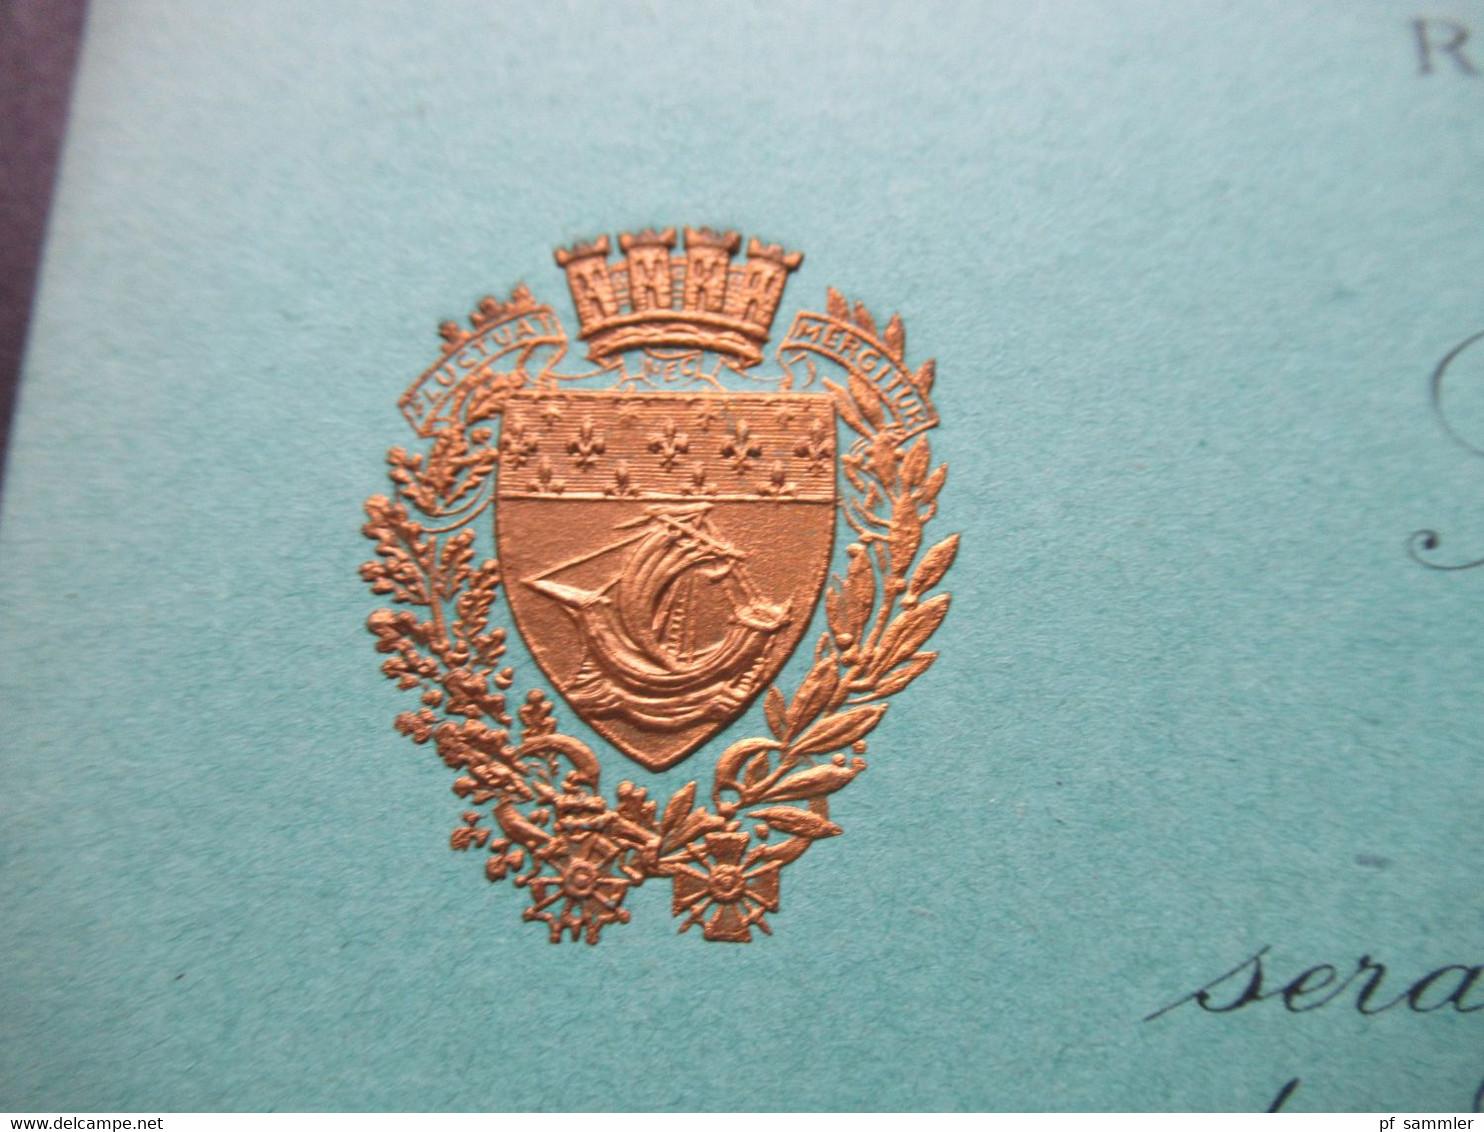 1927 Zwei Einladungskarten Zum Besuch Sa Majestre Fouad 1. Roi D'Egypte In Paris Im Hotel De Ville Salon Des Arcades - Biglietti D'ingresso